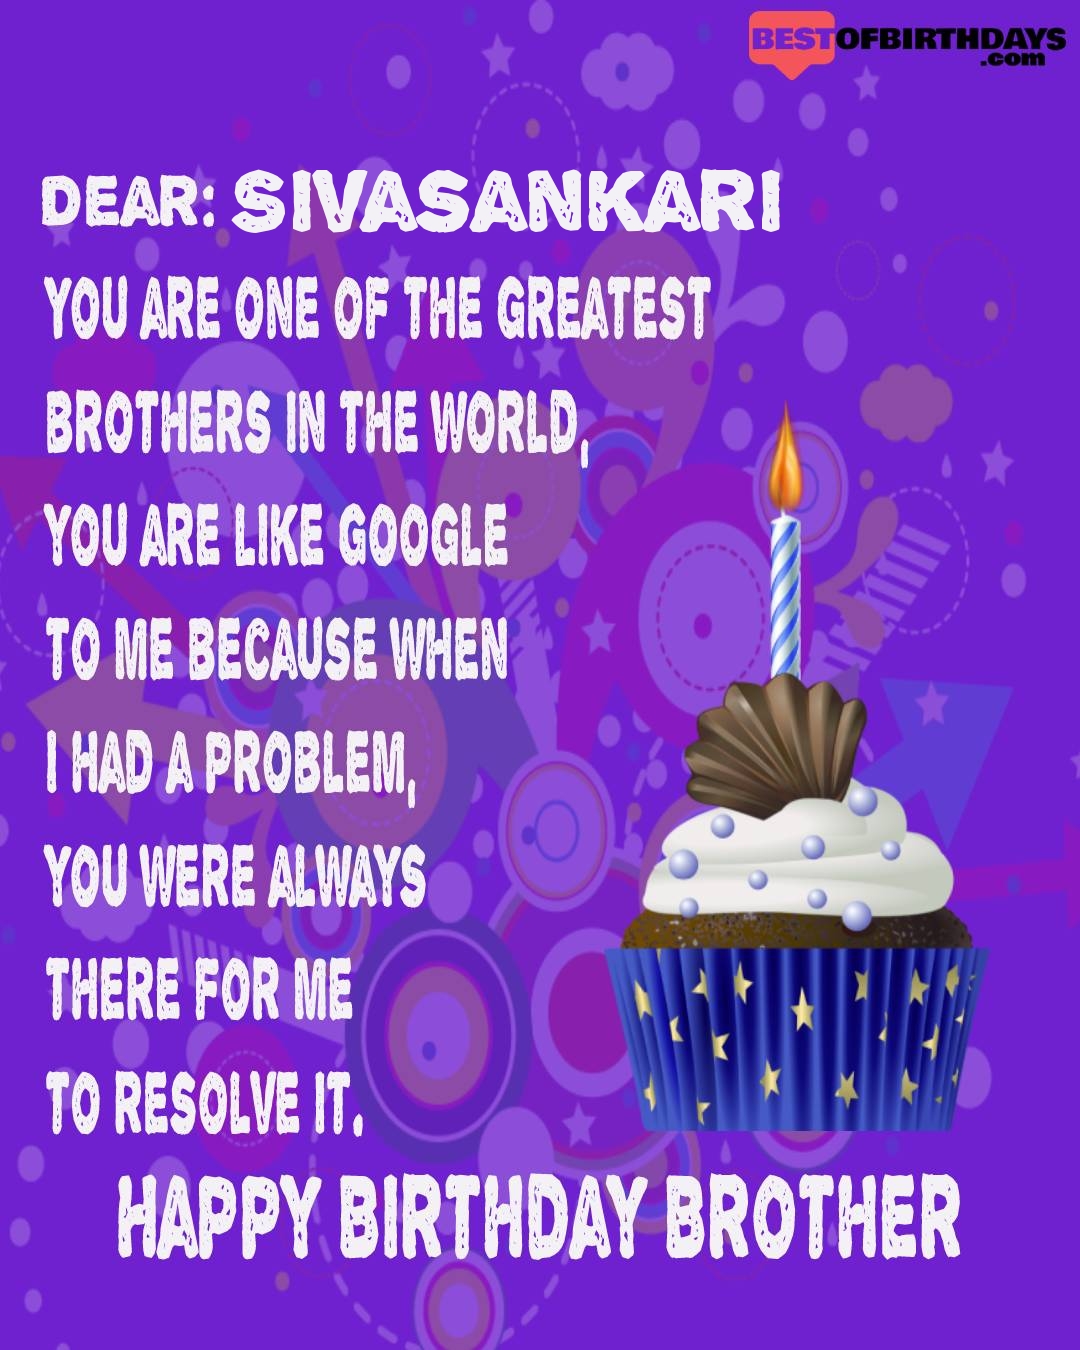 Happy birthday sivasankari bhai brother bro